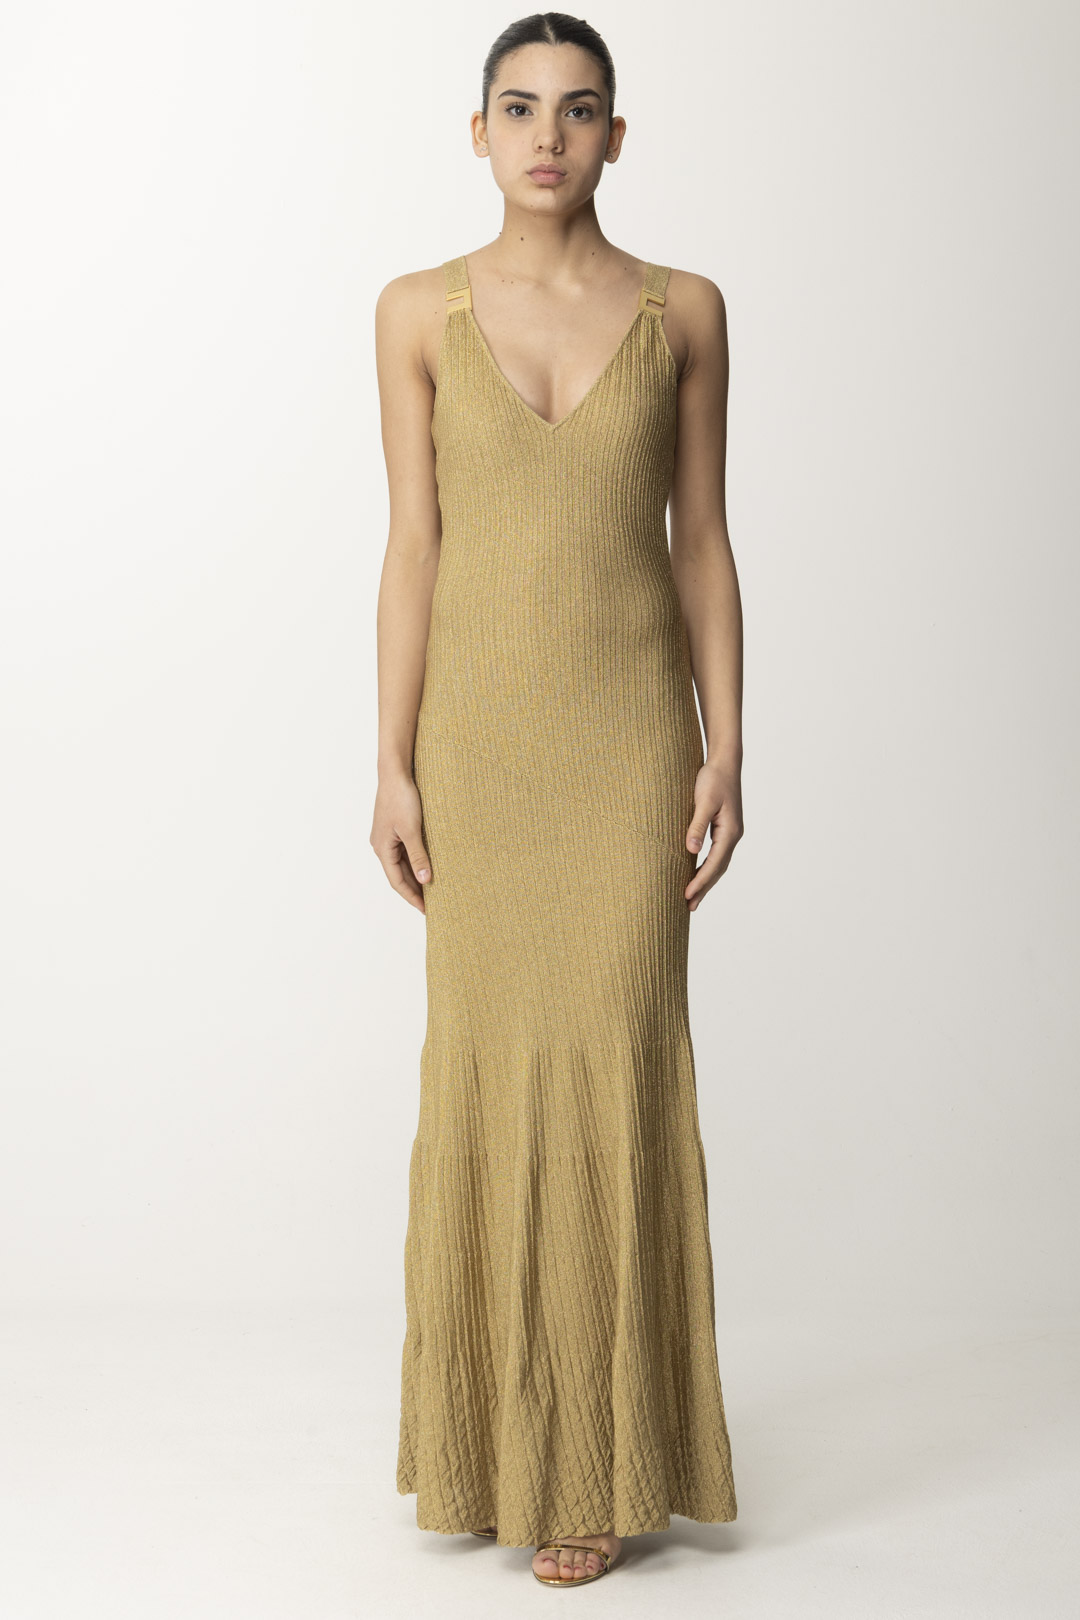 Vista previa: Elisabetta Franchi Vestido metalizado de alfombra roja Oro